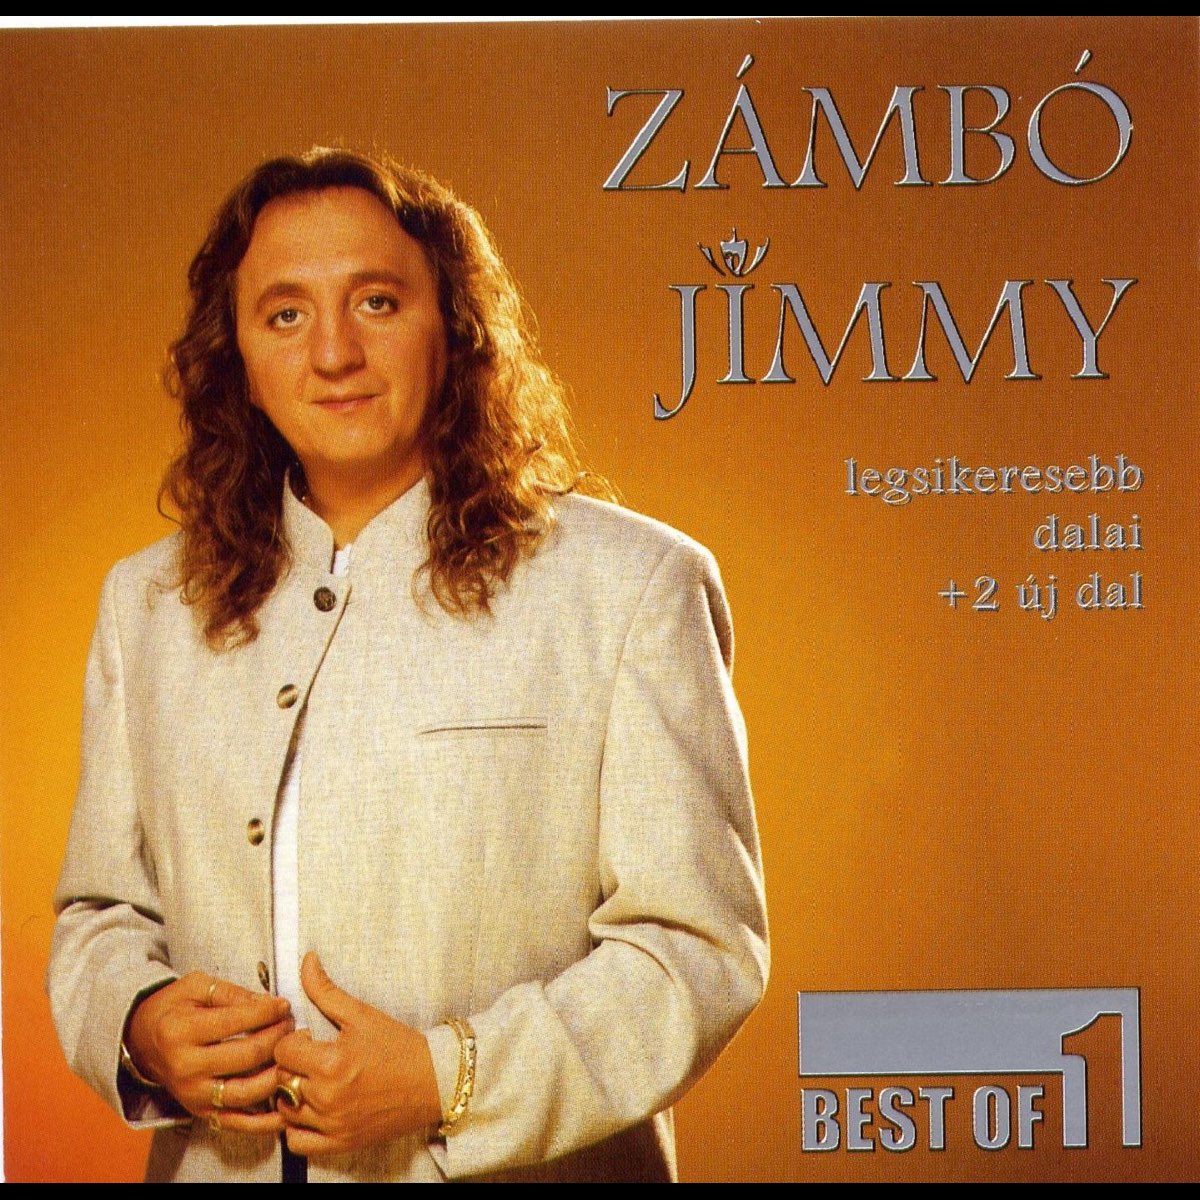 ‎Best of 1. - Album by Zámbó Jimmy - Apple Music